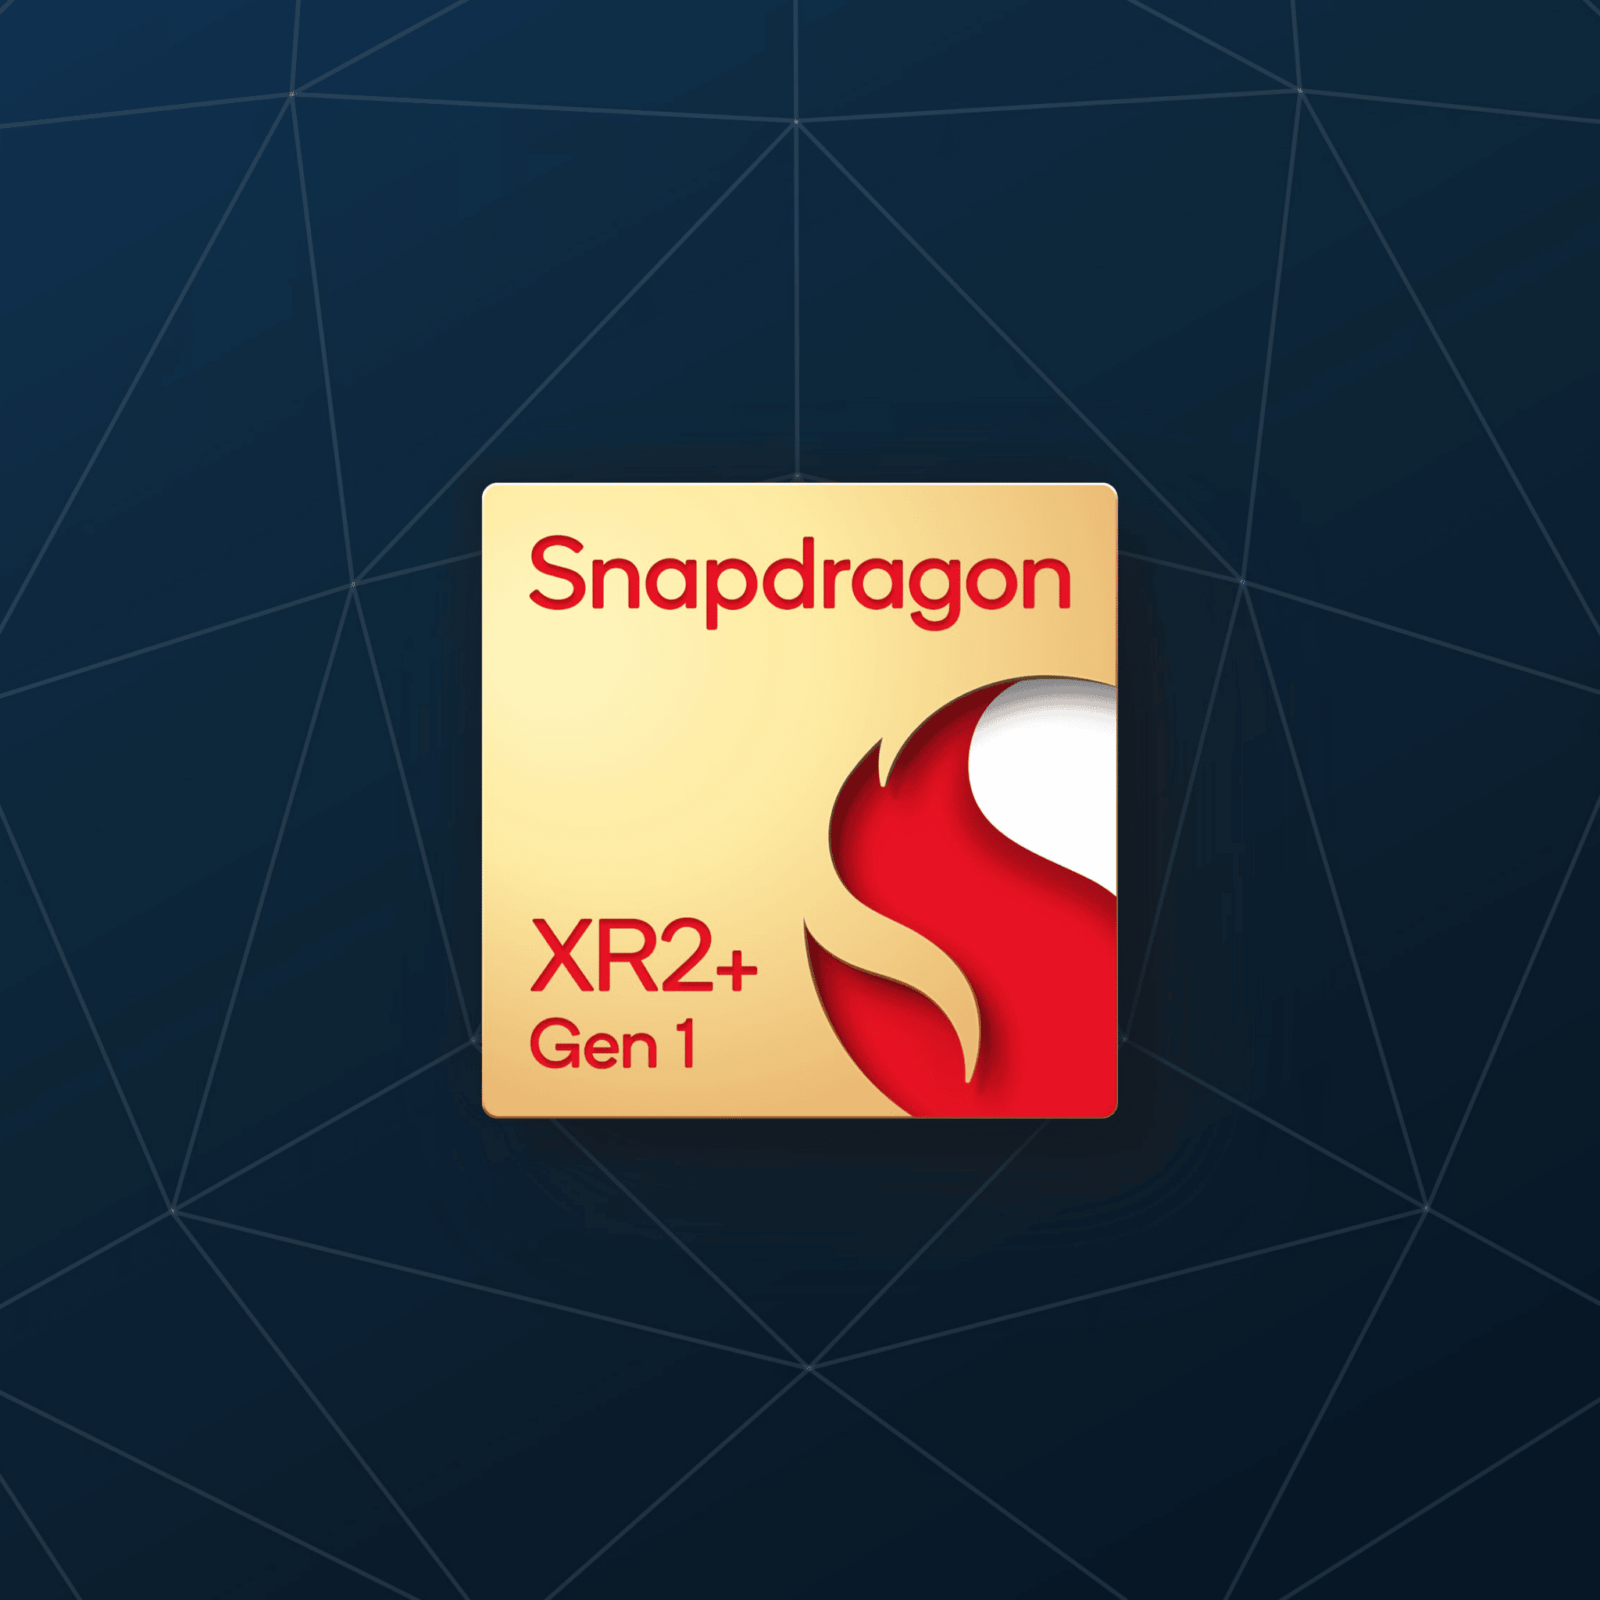 Qualcomm представила чипсет Snapdragon XR2+ Gen 1 (Qualcomm Snapdragon XR2 Gen1 square)